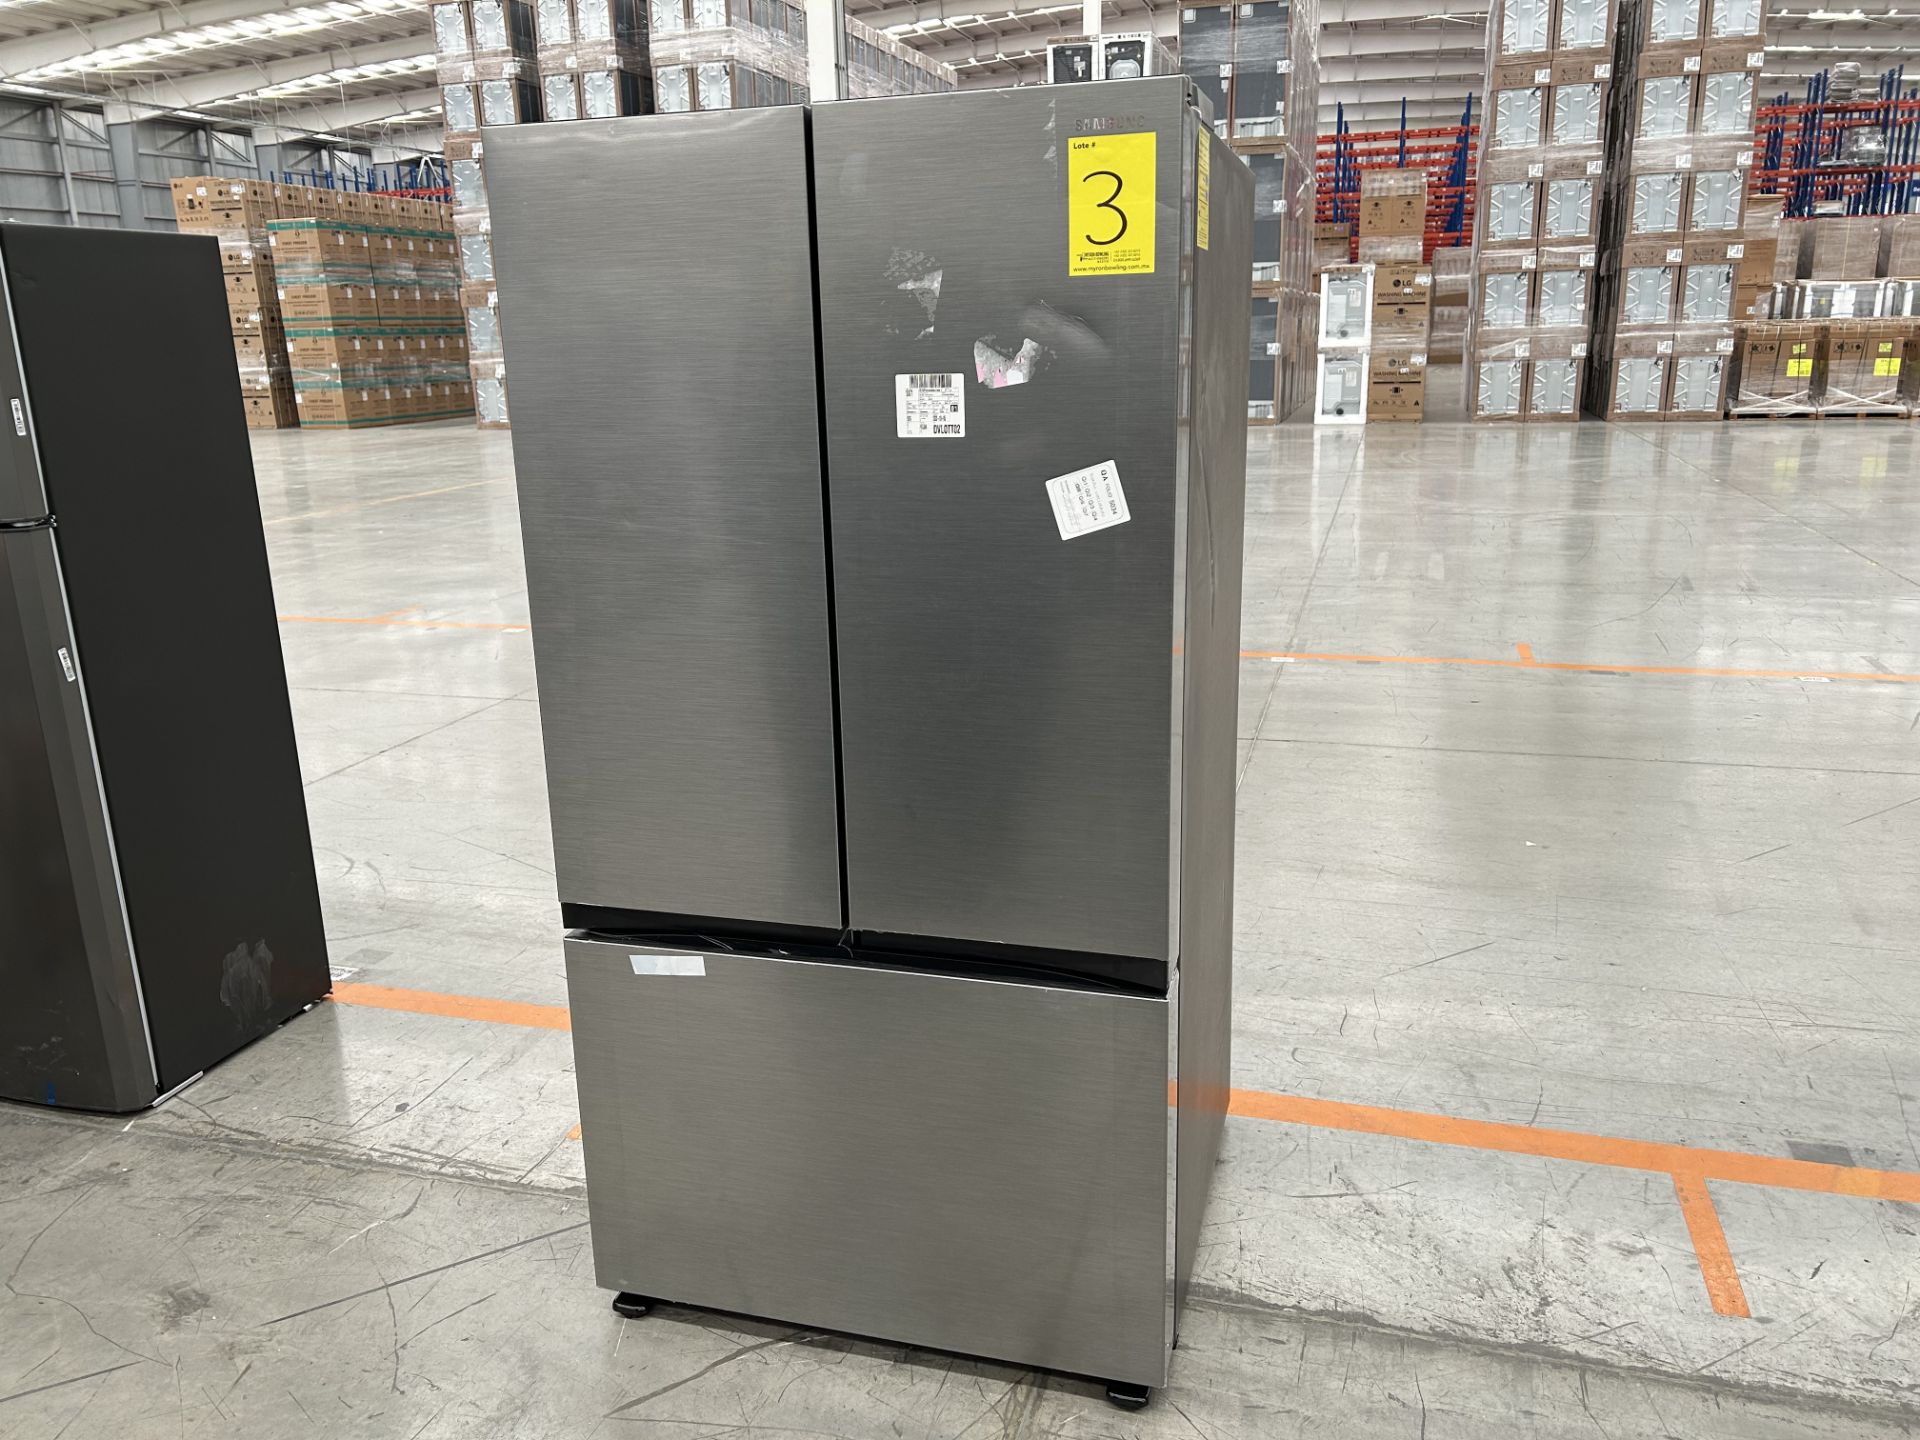 Lote de 1 Refrigerador Marca SAMSUNG, Modelo RF32CG5A10S9EM, Serie 900196X, Color GRIS (No se asegu - Image 2 of 5